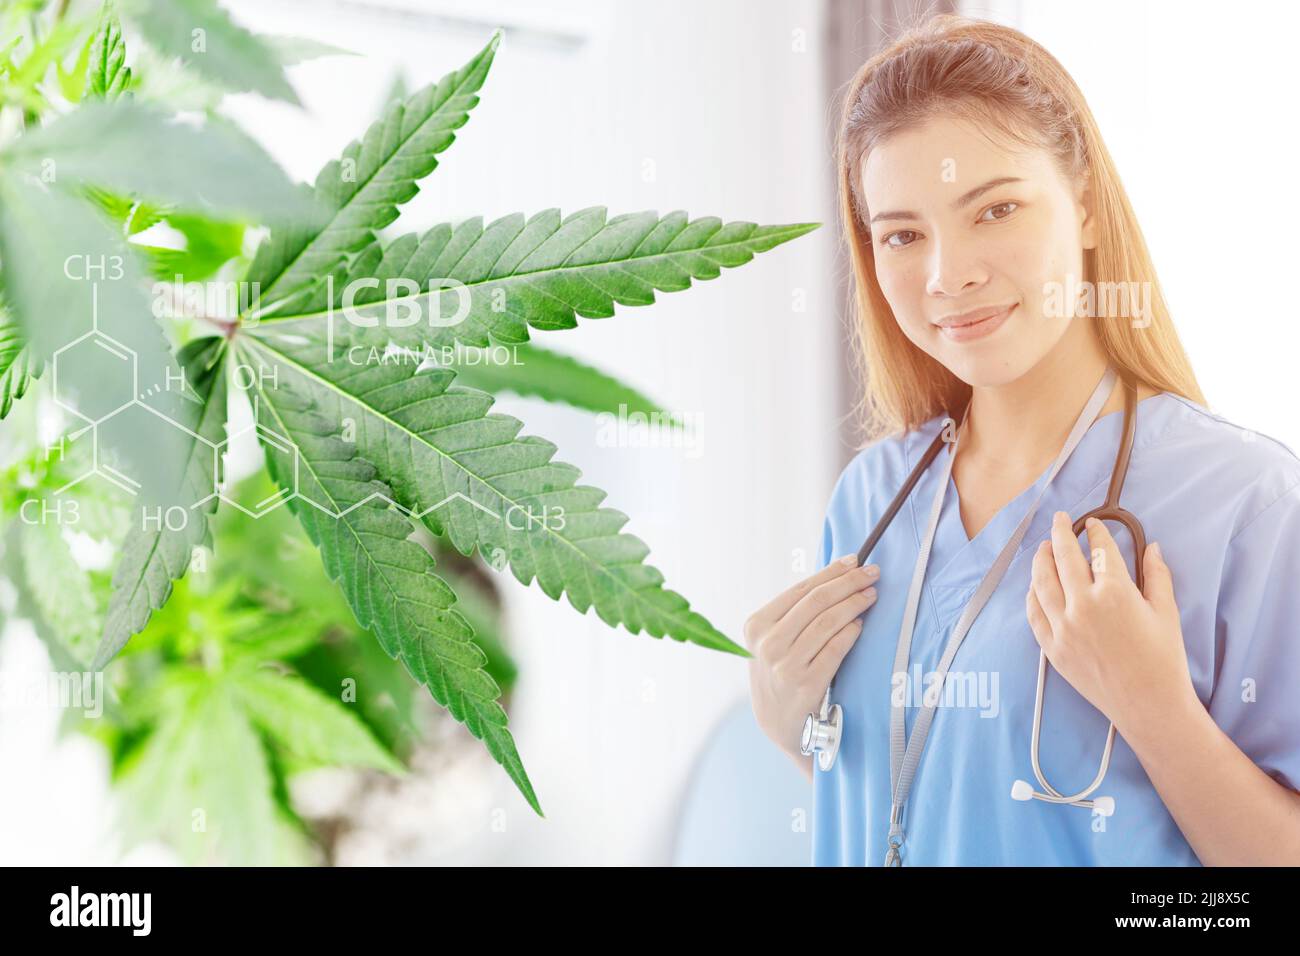 Cannabis planta de cáñamo con feliz médico sonrisa por el uso de CBD en la terapia médica alivio del dolor concepto. Foto de stock